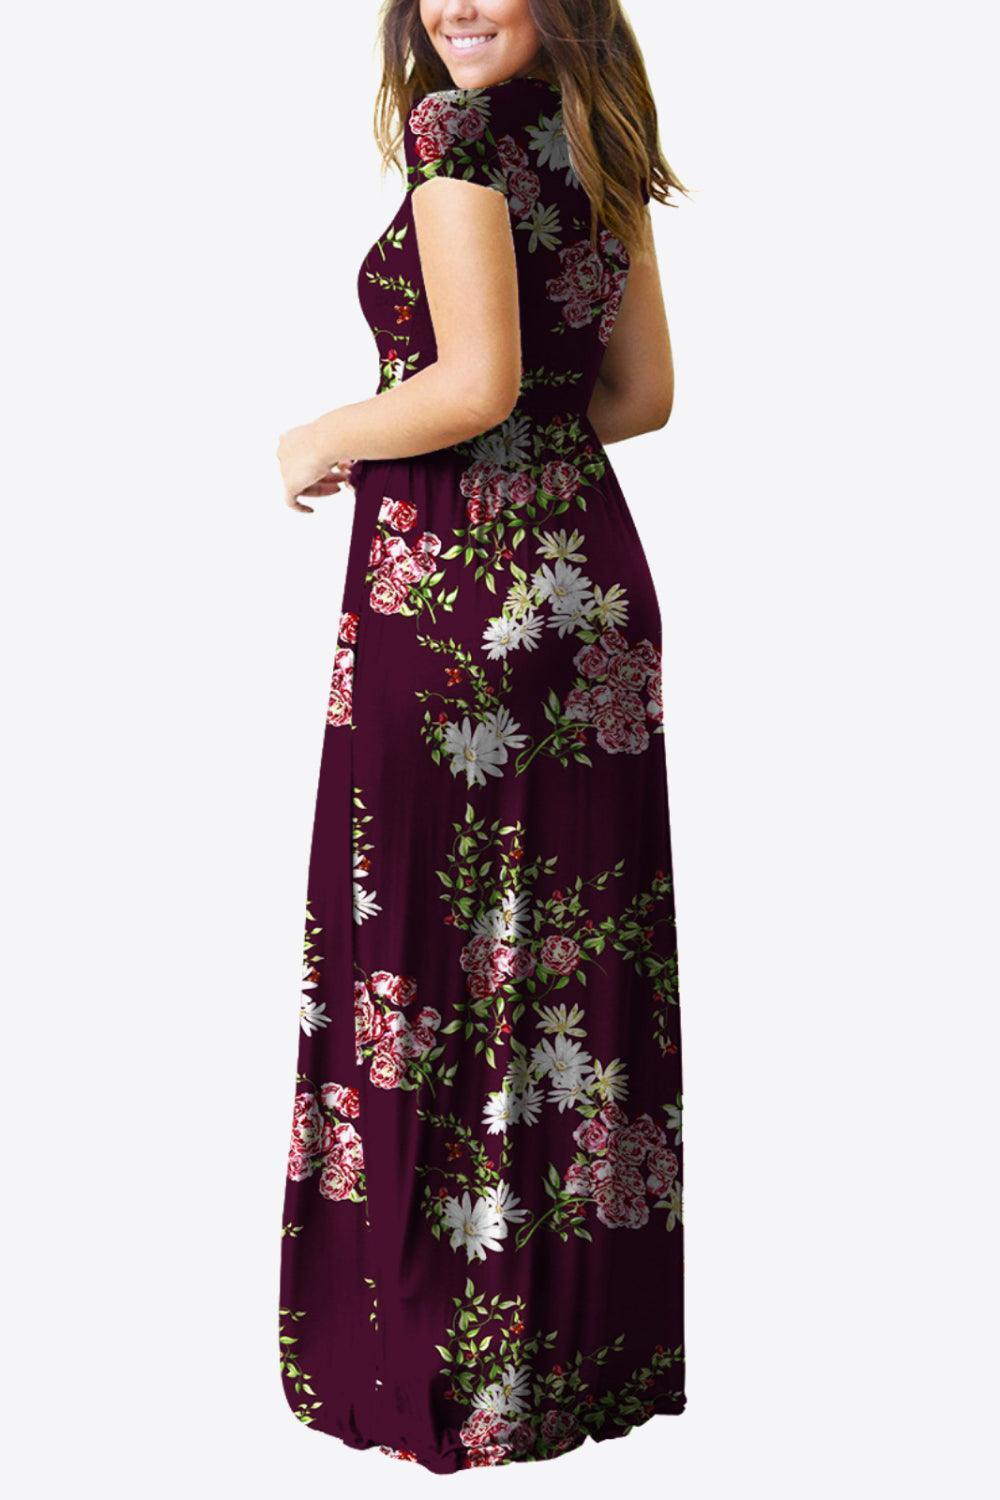 Comfy Chic Short Sleeve Floral A Line Maxi Dress - MXSTUDIO.COM